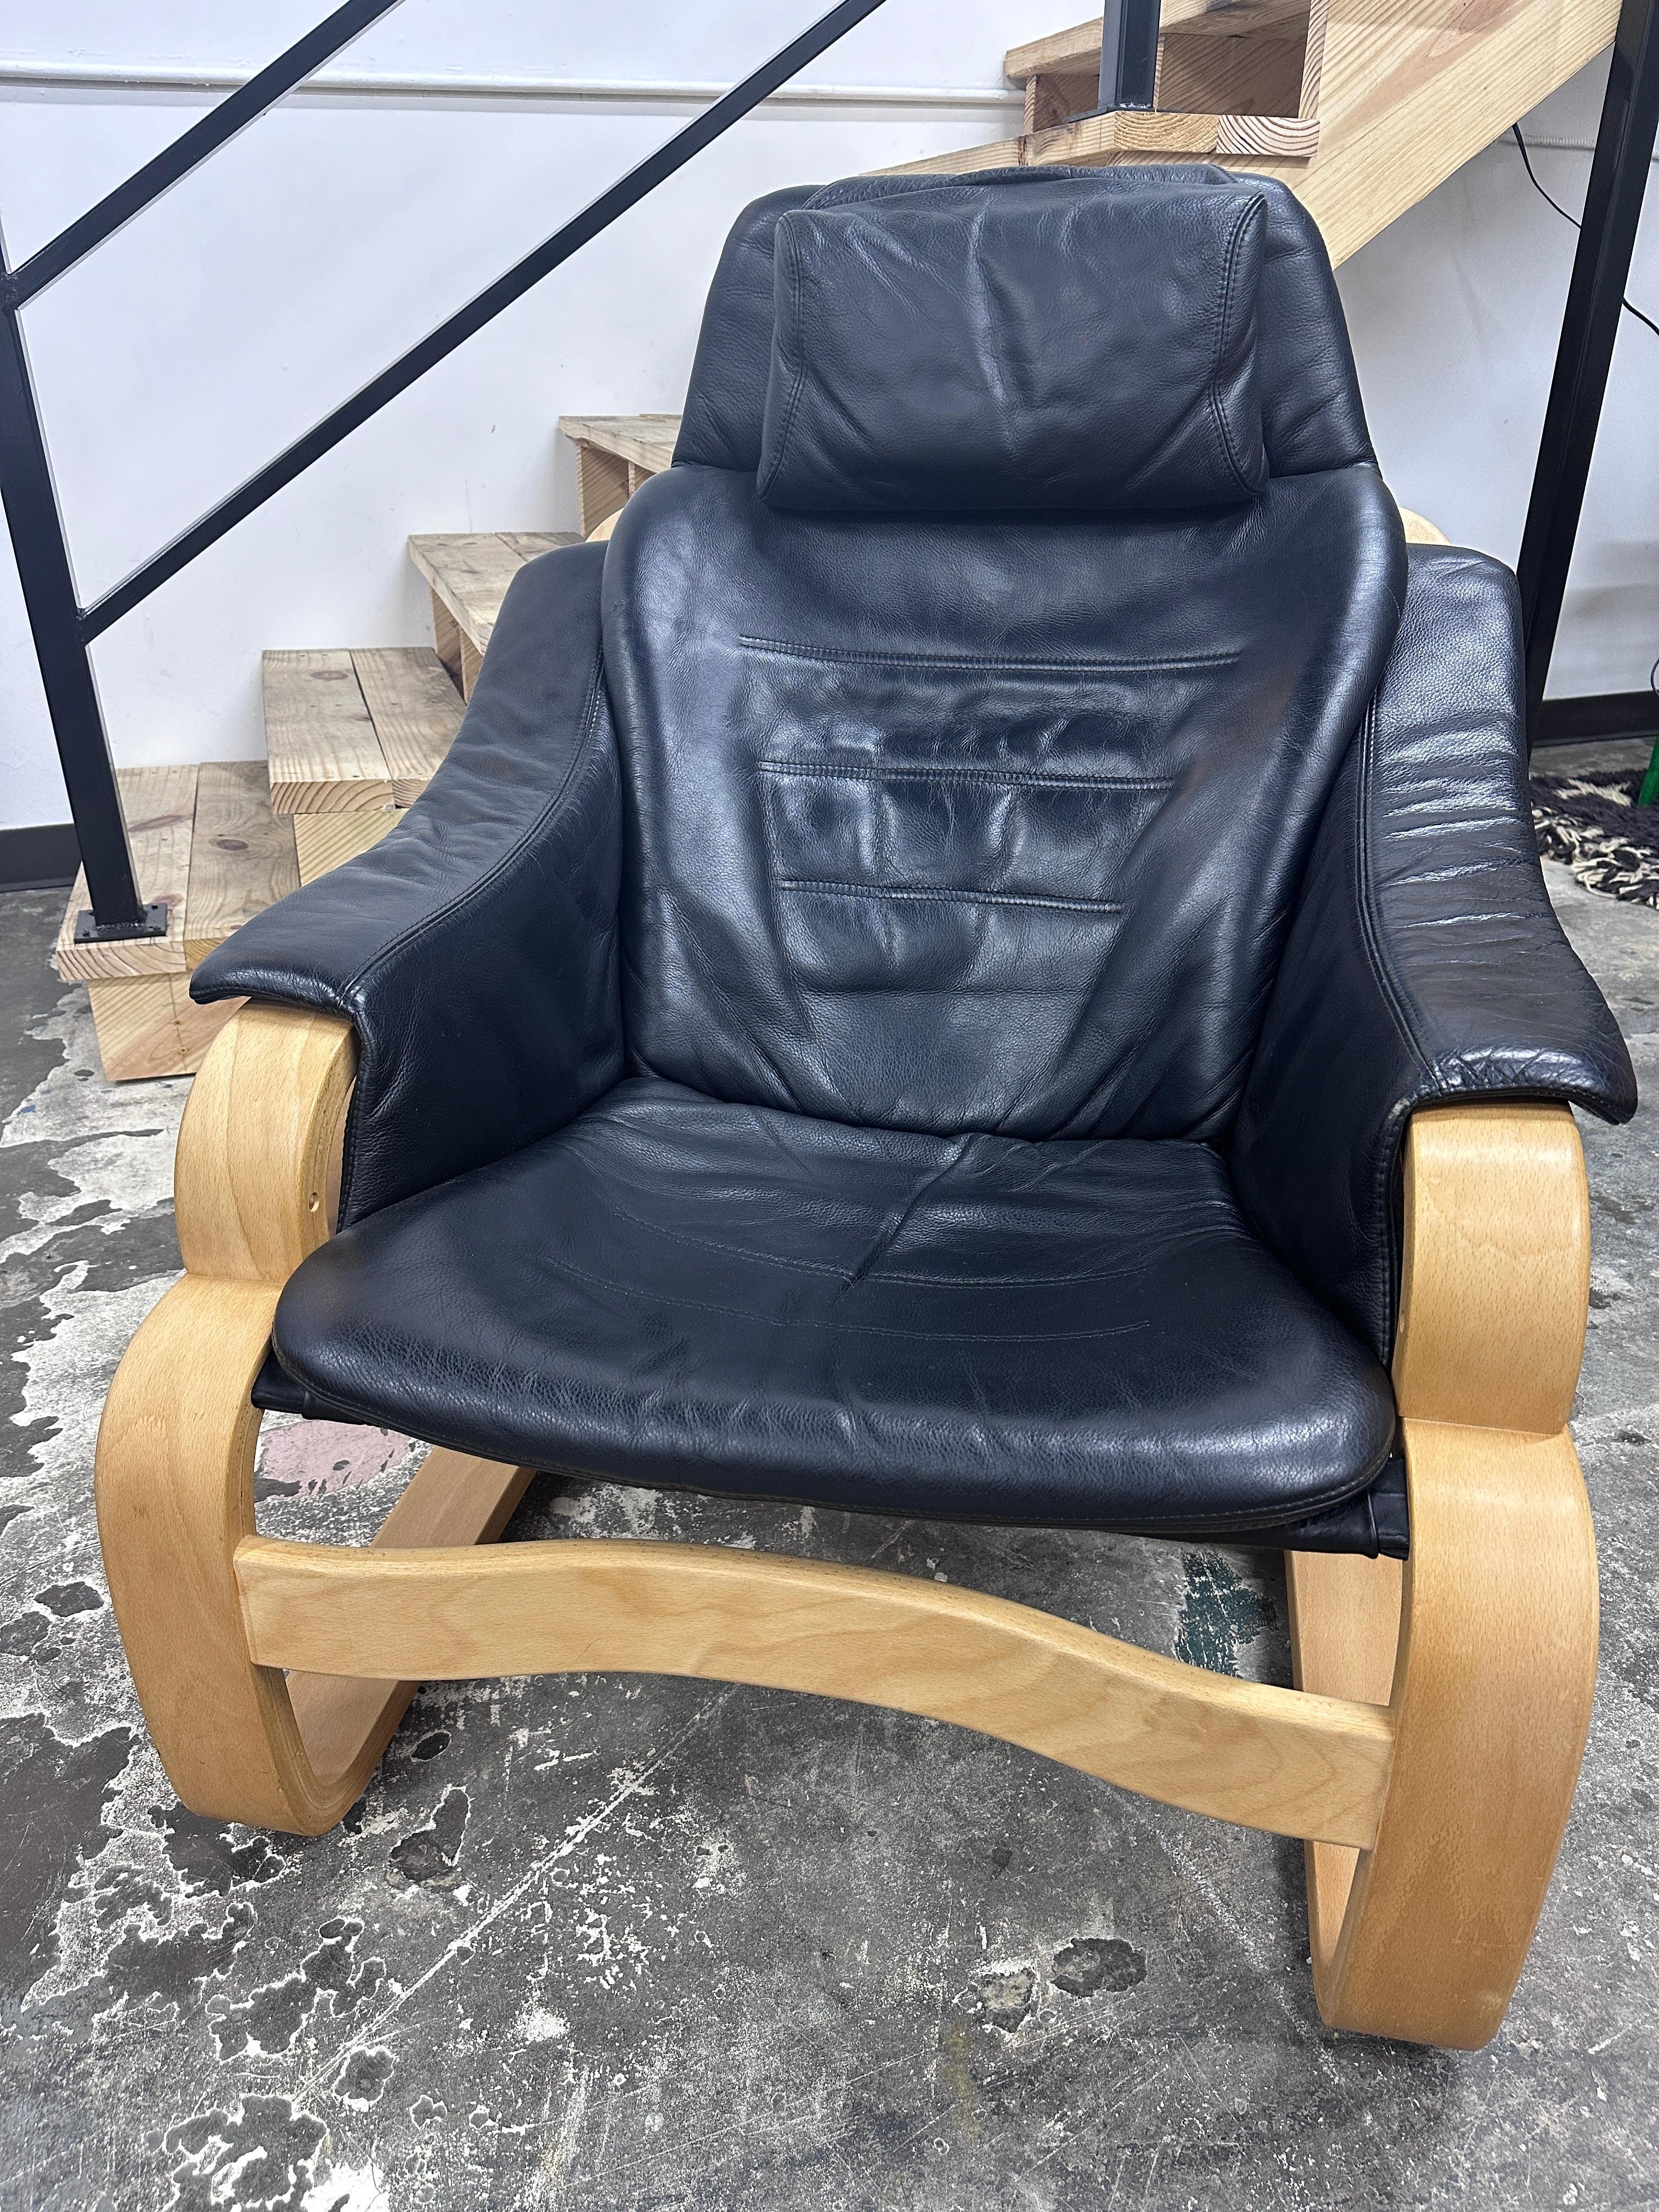 Ce fauteuil 'Apollo' est composé d'un cadre en contreplaqué courbé et d'un revêtement en cuir noir. Produit par Skippers Furniture au Danemark dans les années 1970, il est étiqueté. En excellent état vintage avec une légère usure due à l'âge.

Deux